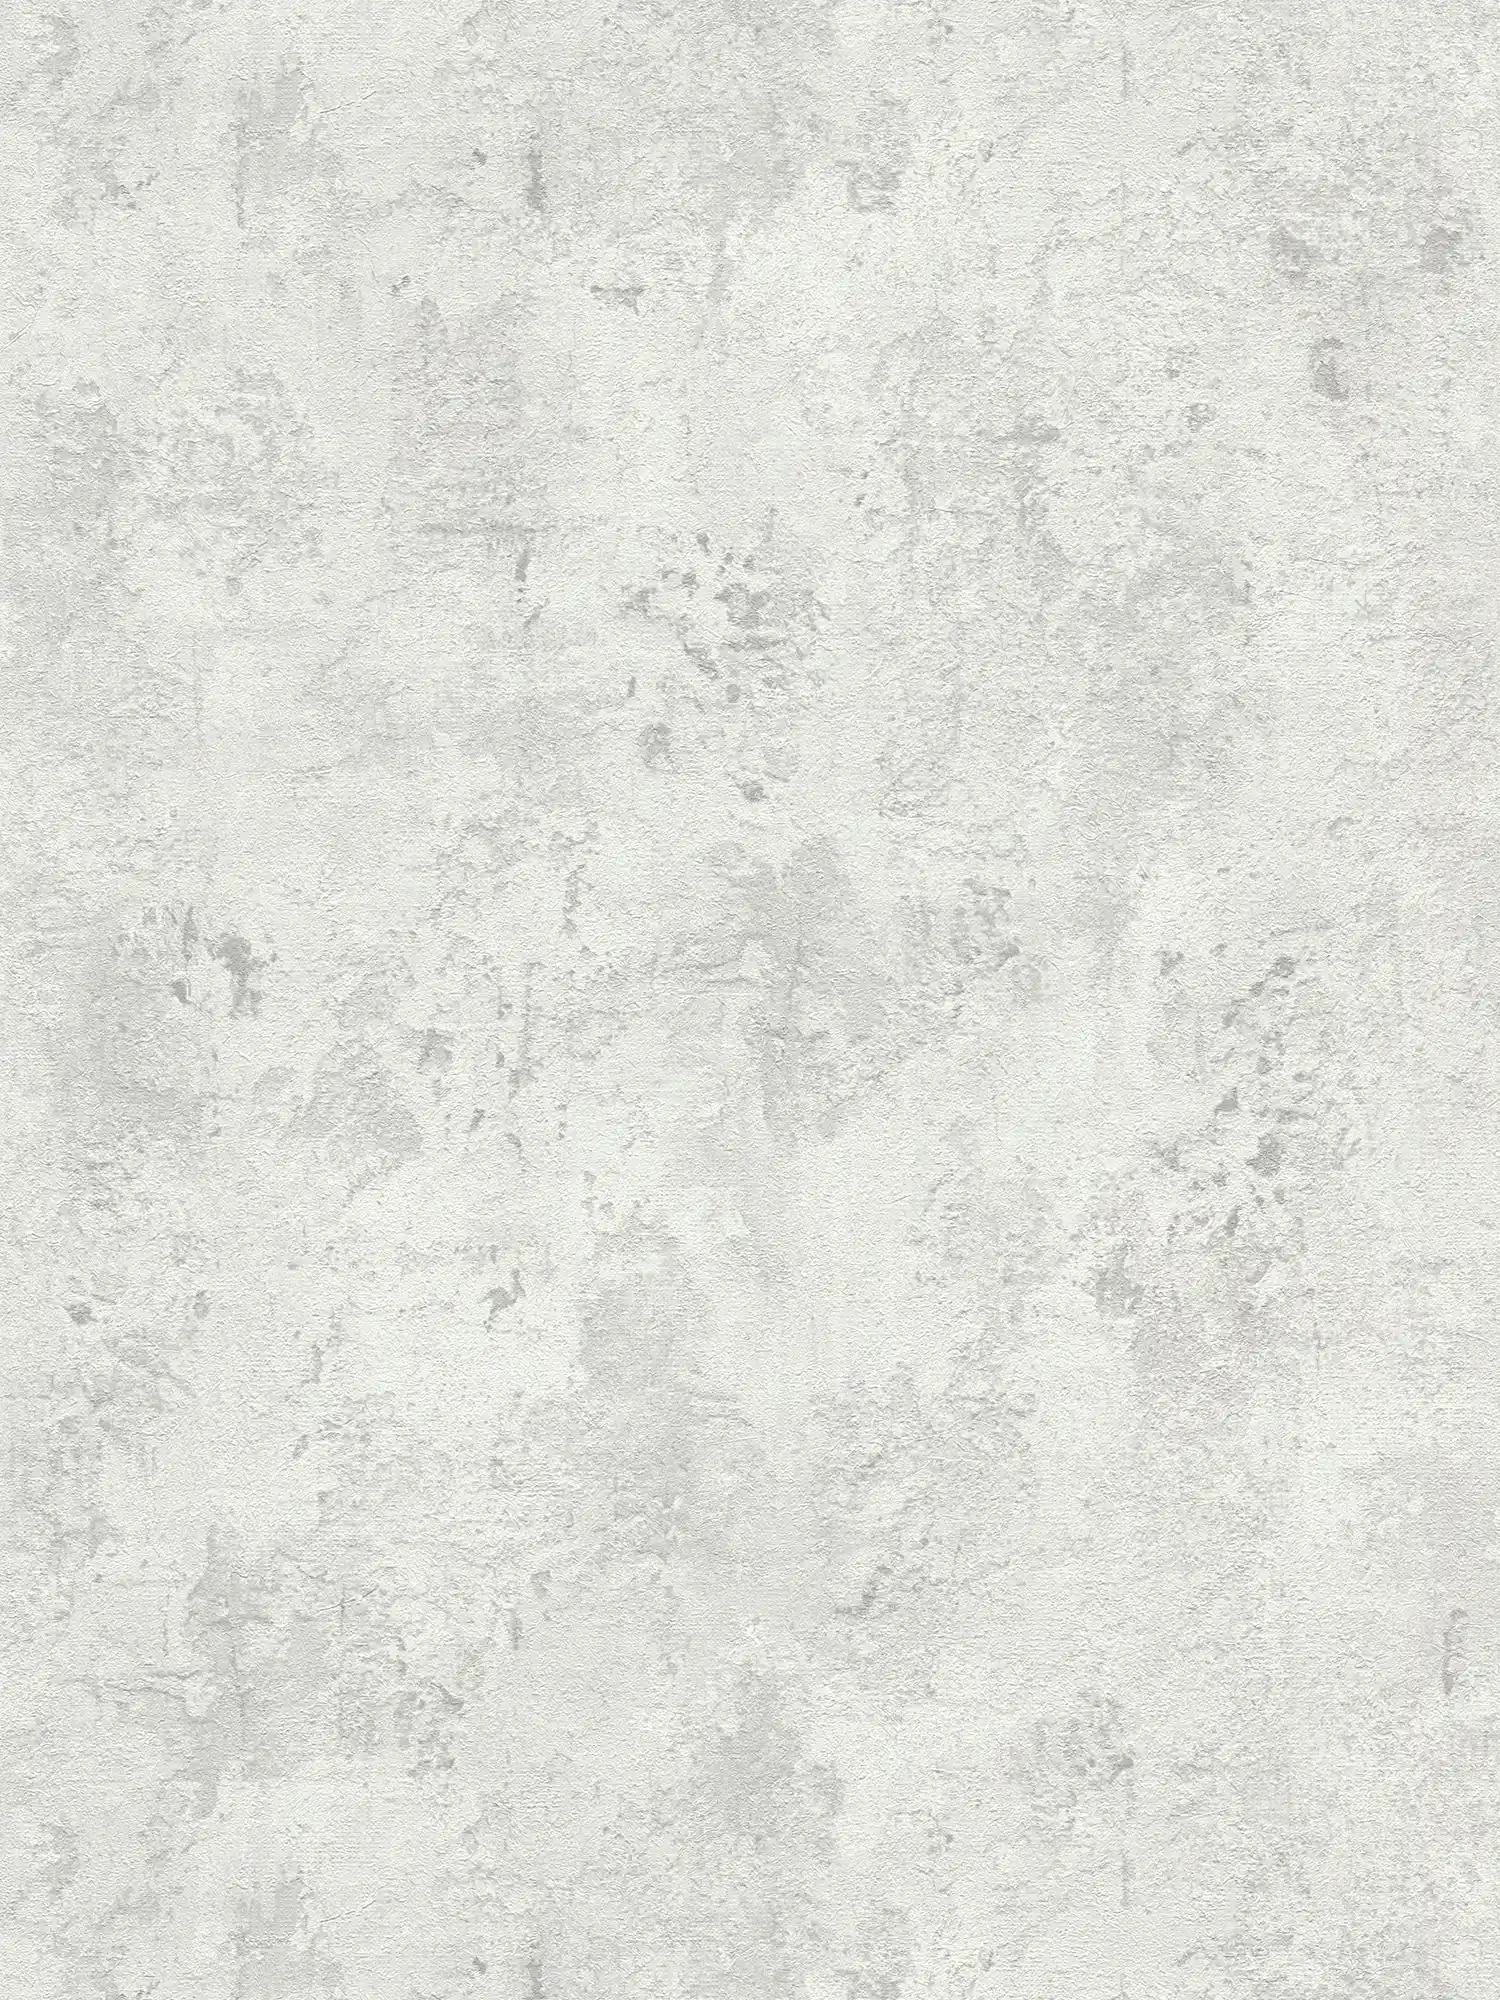 Carta da parati in cemento grigio chiaro con design della struttura - grigio
